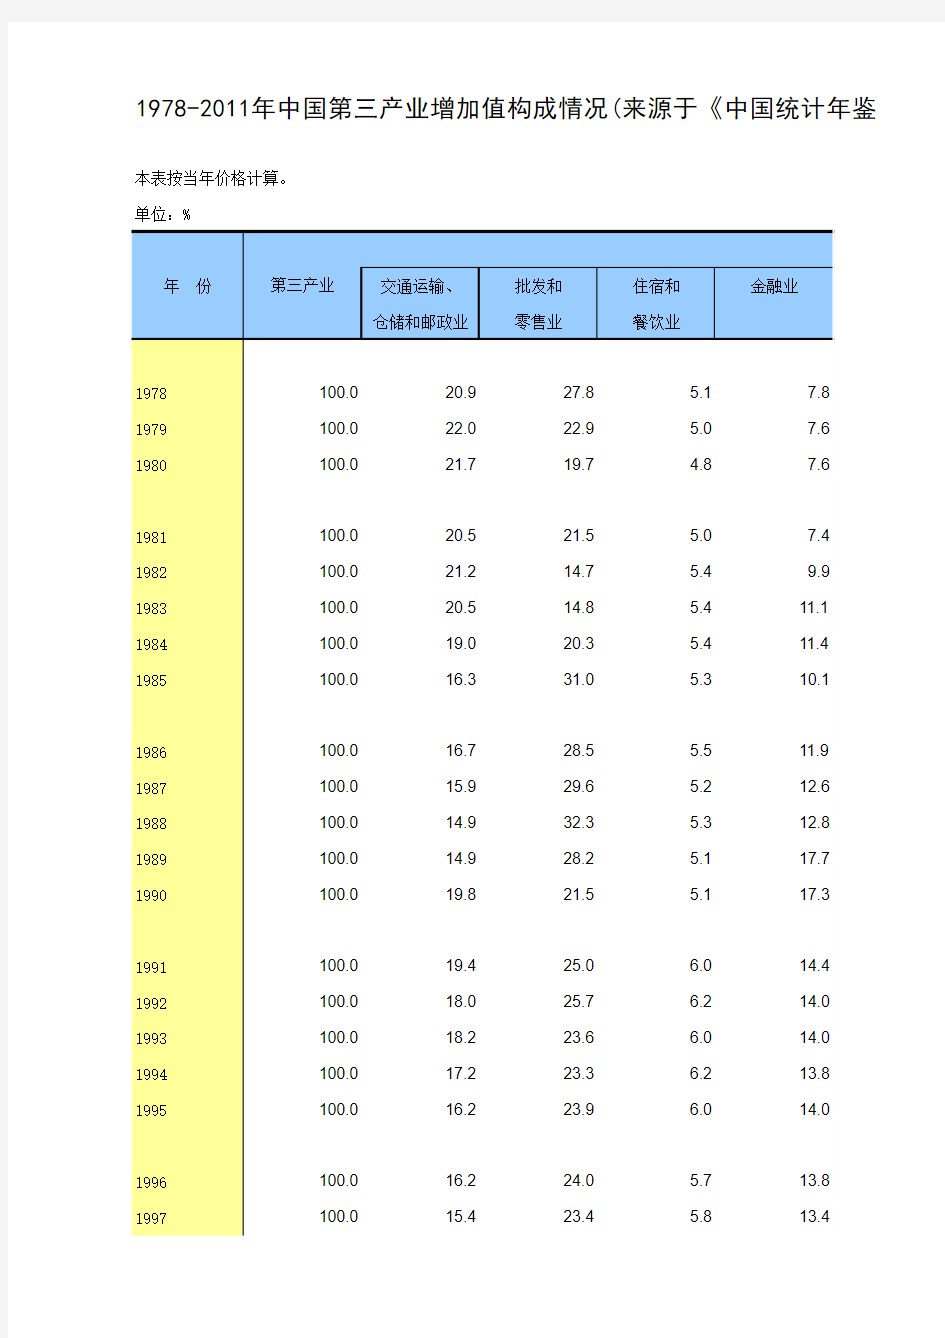 1978-2011年中国第三产业增加值构成情况(来源于《中国统计年鉴2012》)